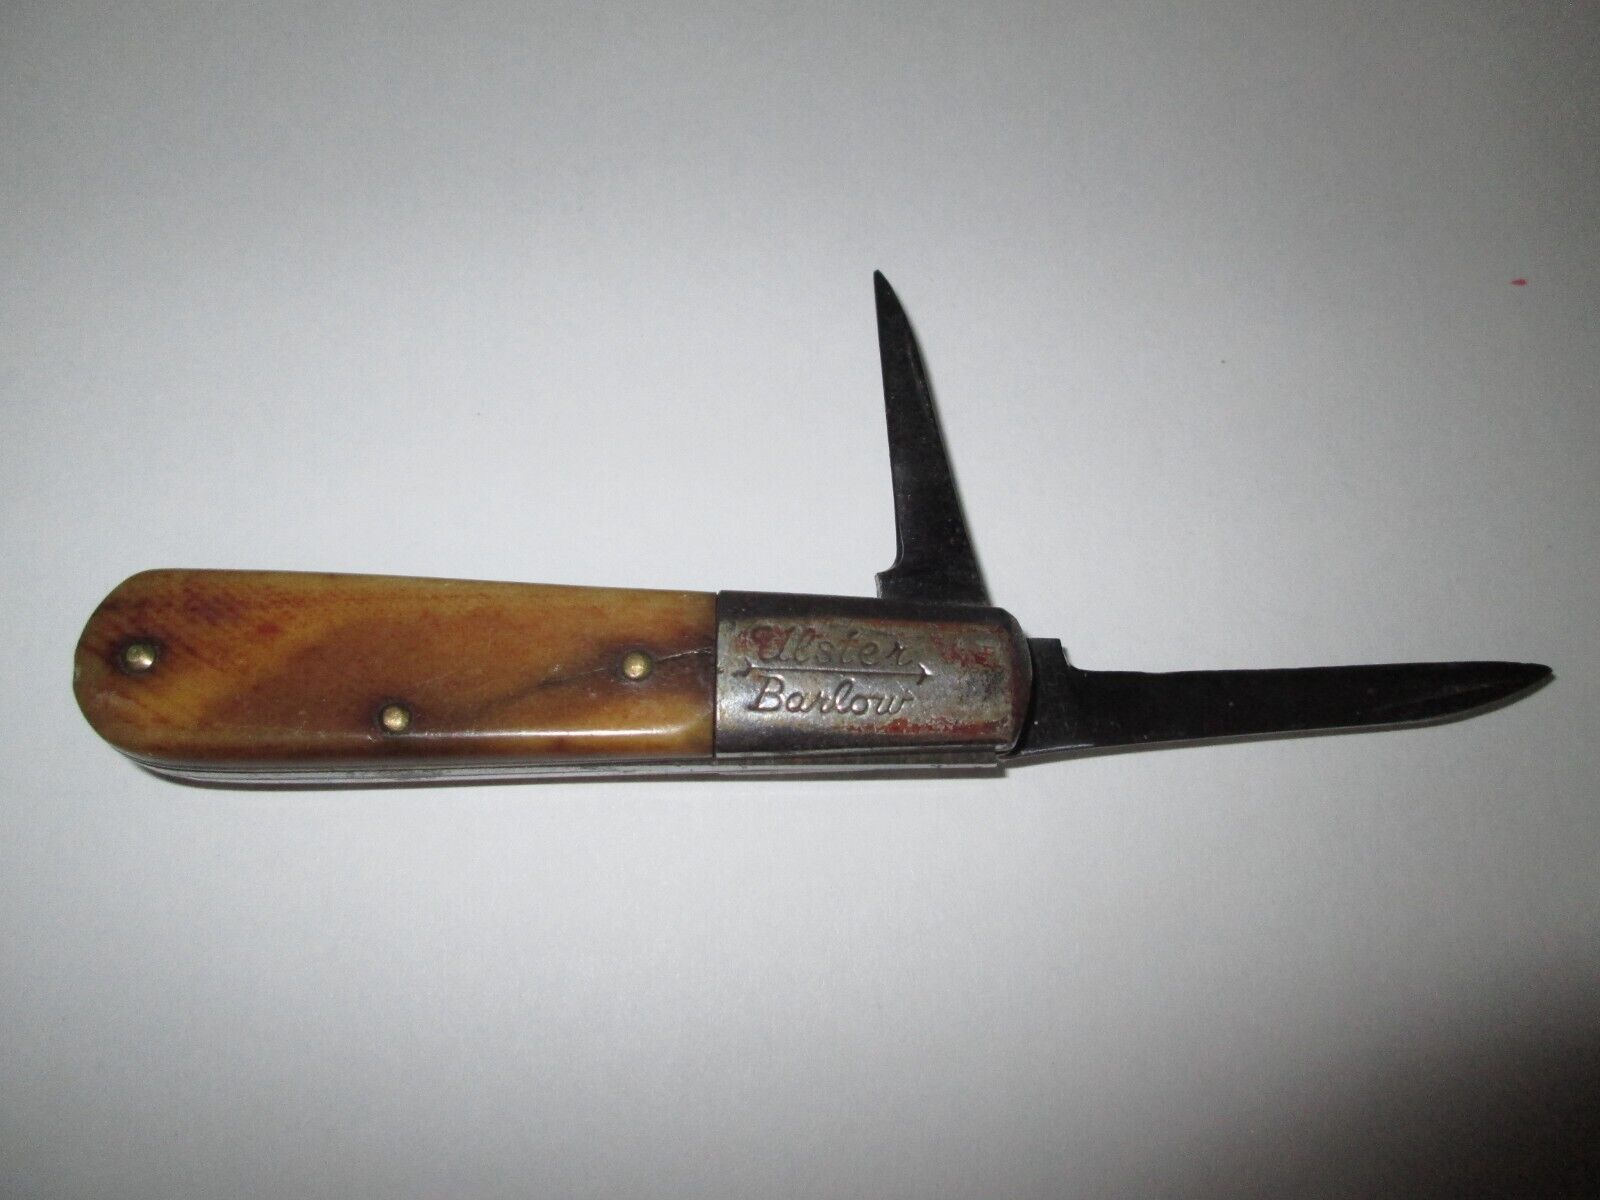 Vintage Antique Ulster Knife Co Bone Stag Barlow Jack Pocket Knife